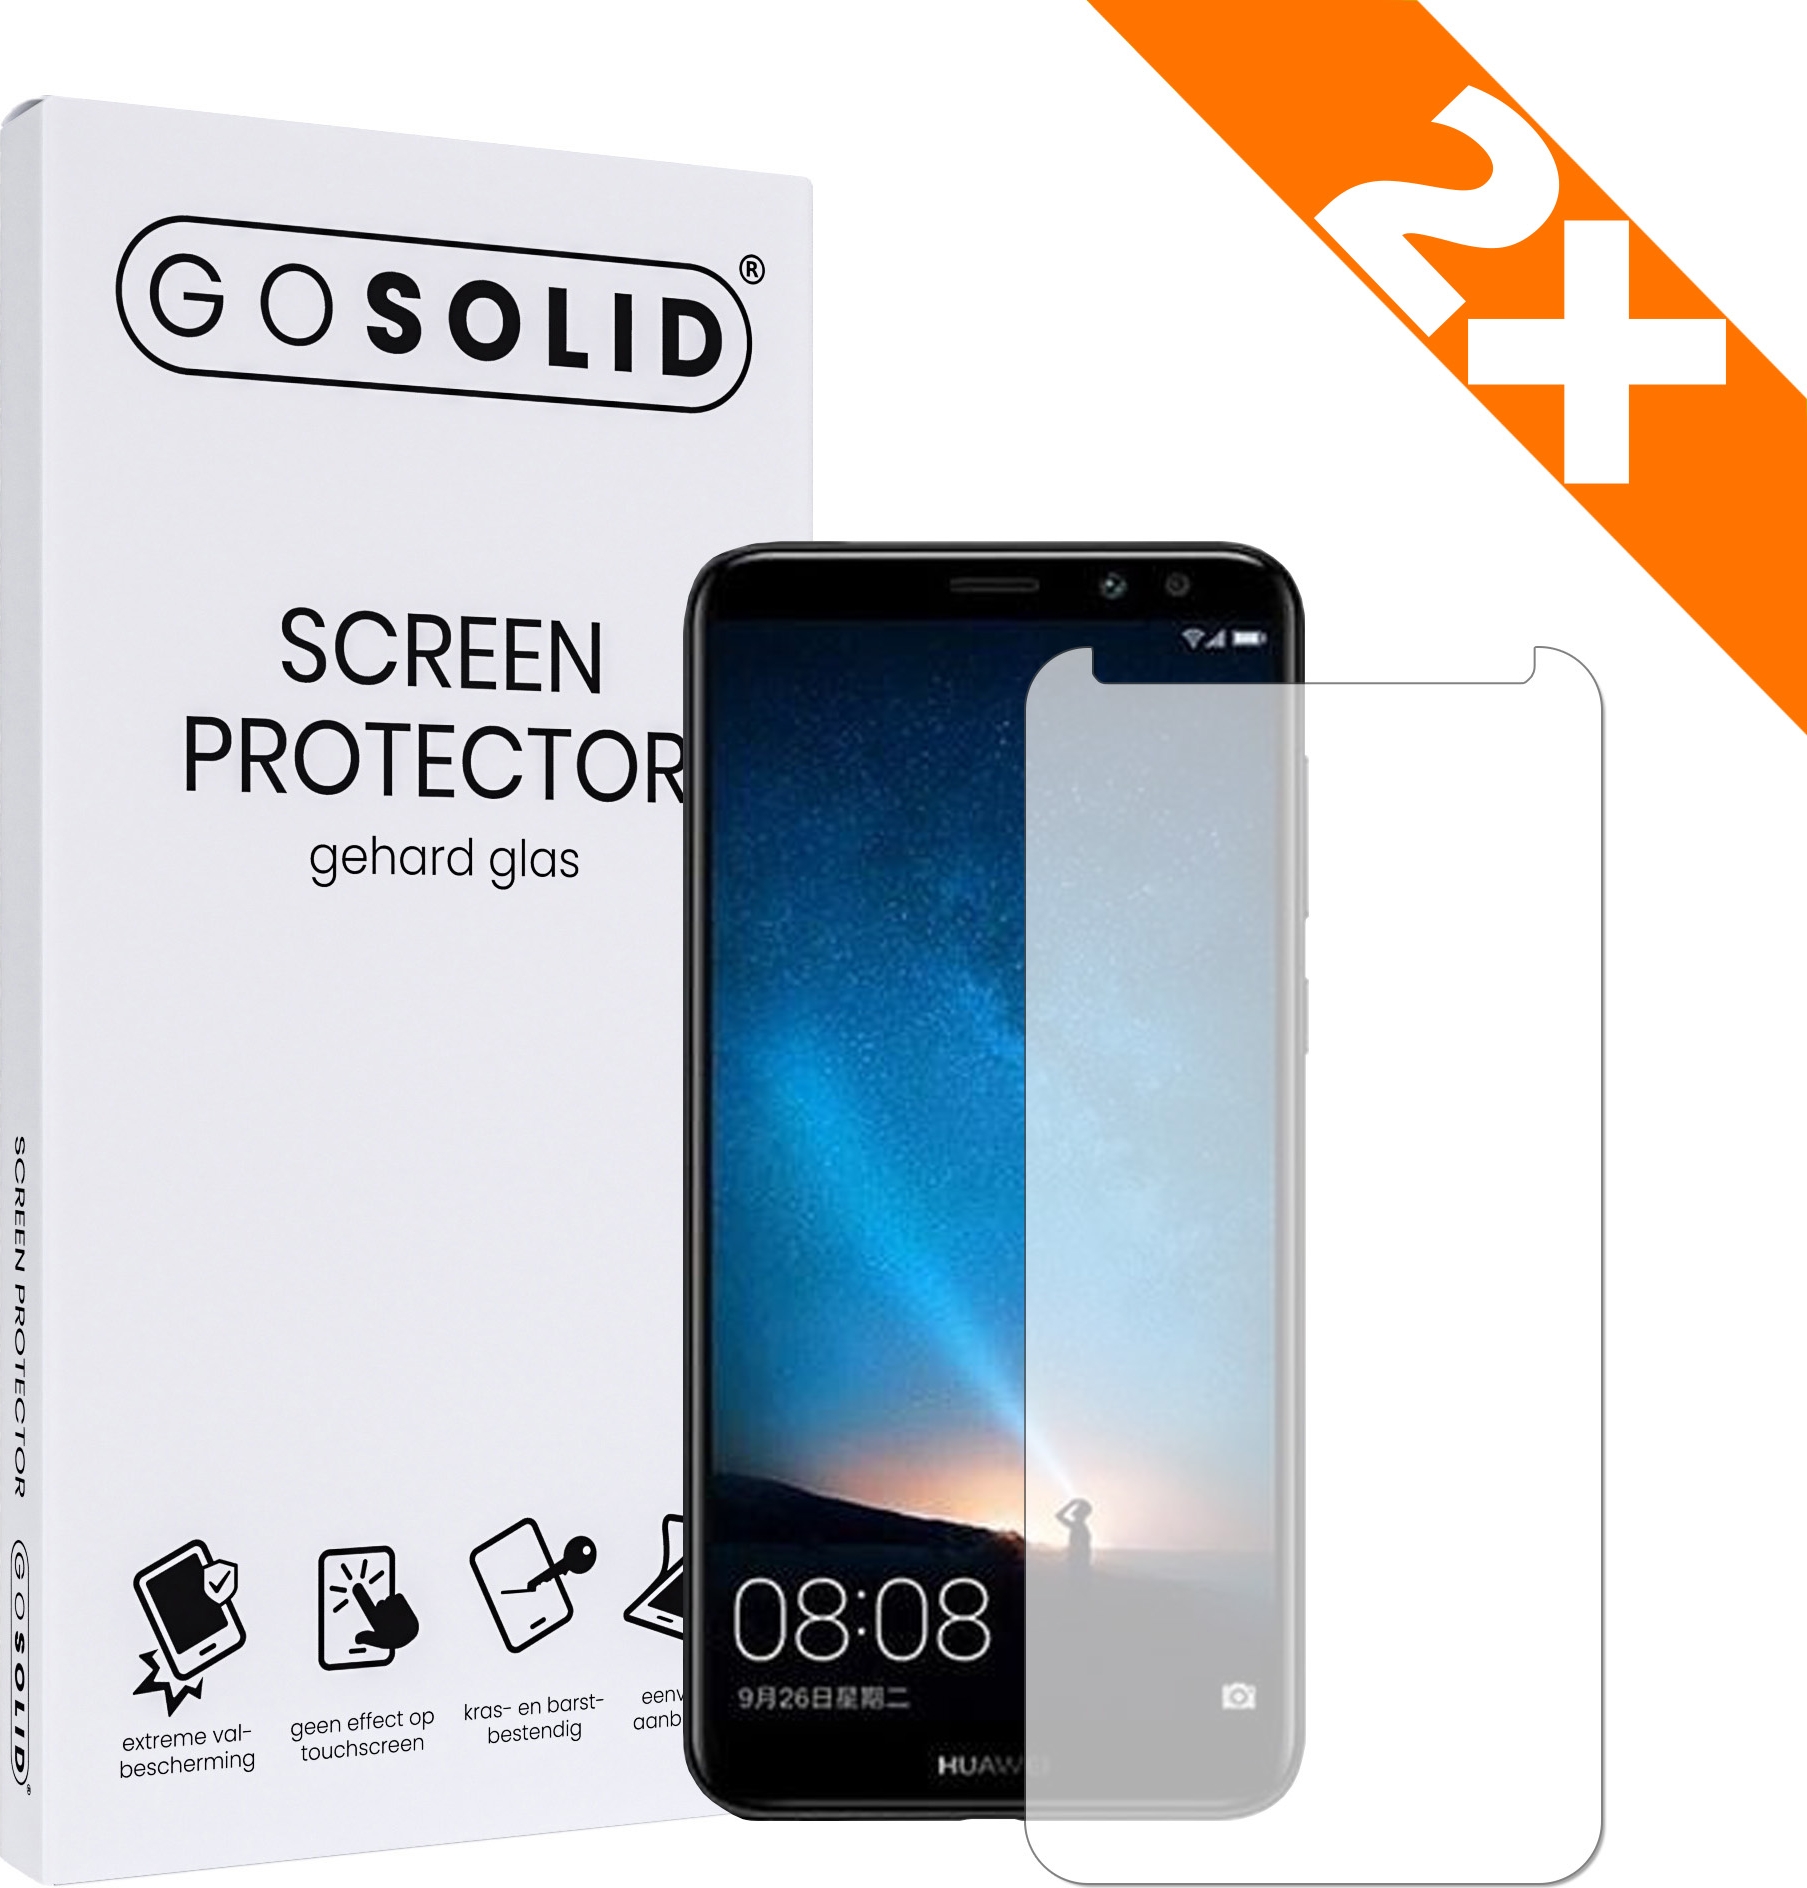 zwavel Streven Justitie ᐅ • GO SOLID! Huawei Mate 10 Pro screenprotector gehard glas - Duopack |  Eenvoudig bij ScreenProtectors.nl